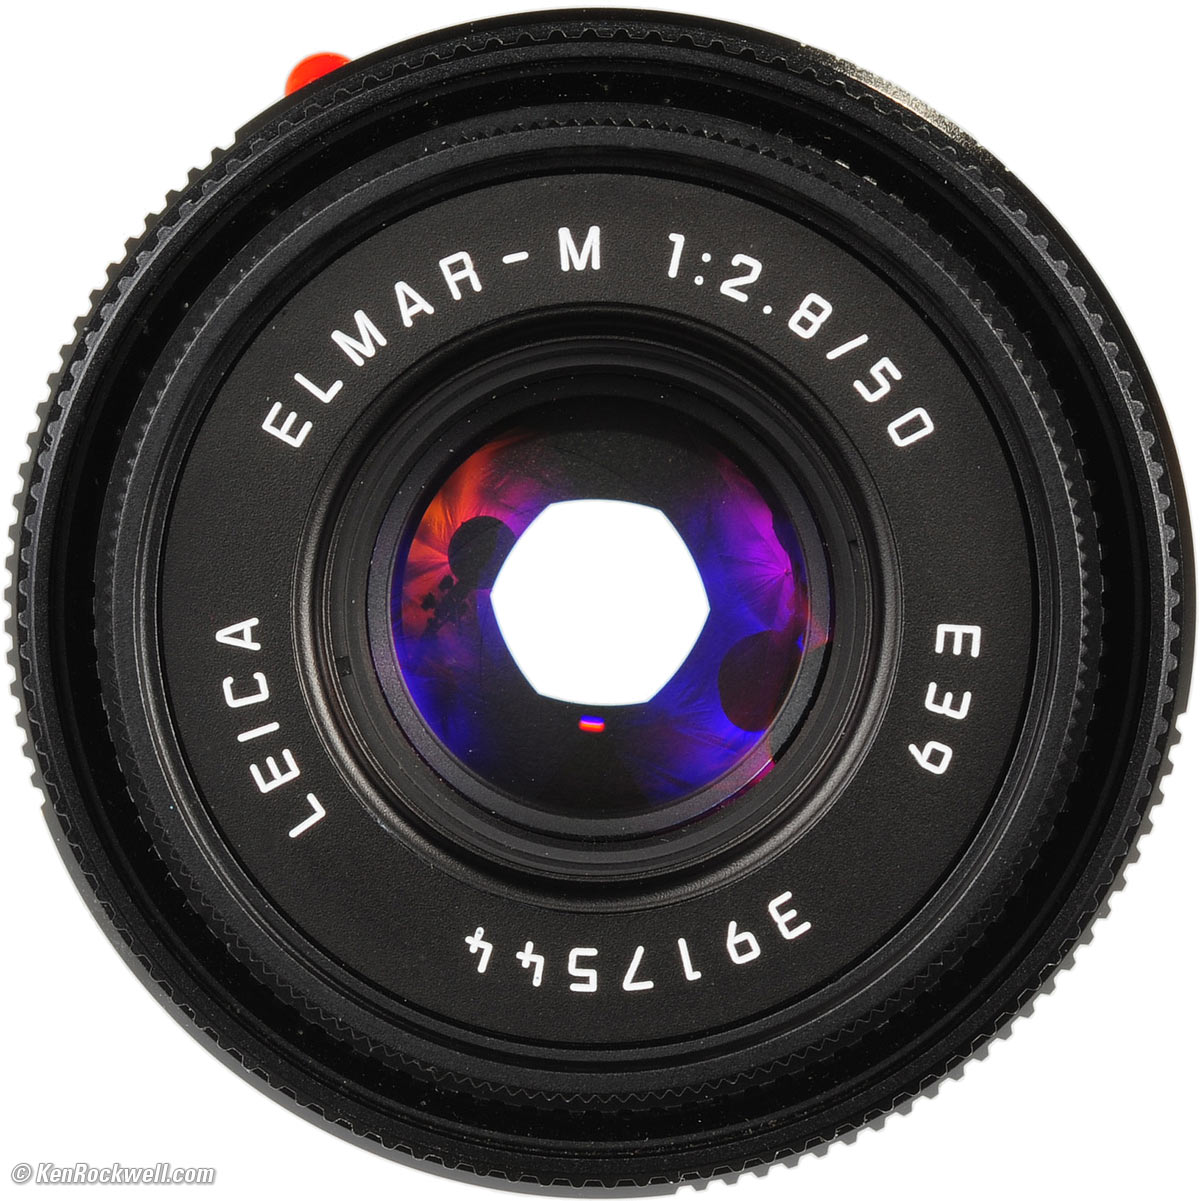 LEICA 50mm f/2.8 ELMAR-M (1994-2007)